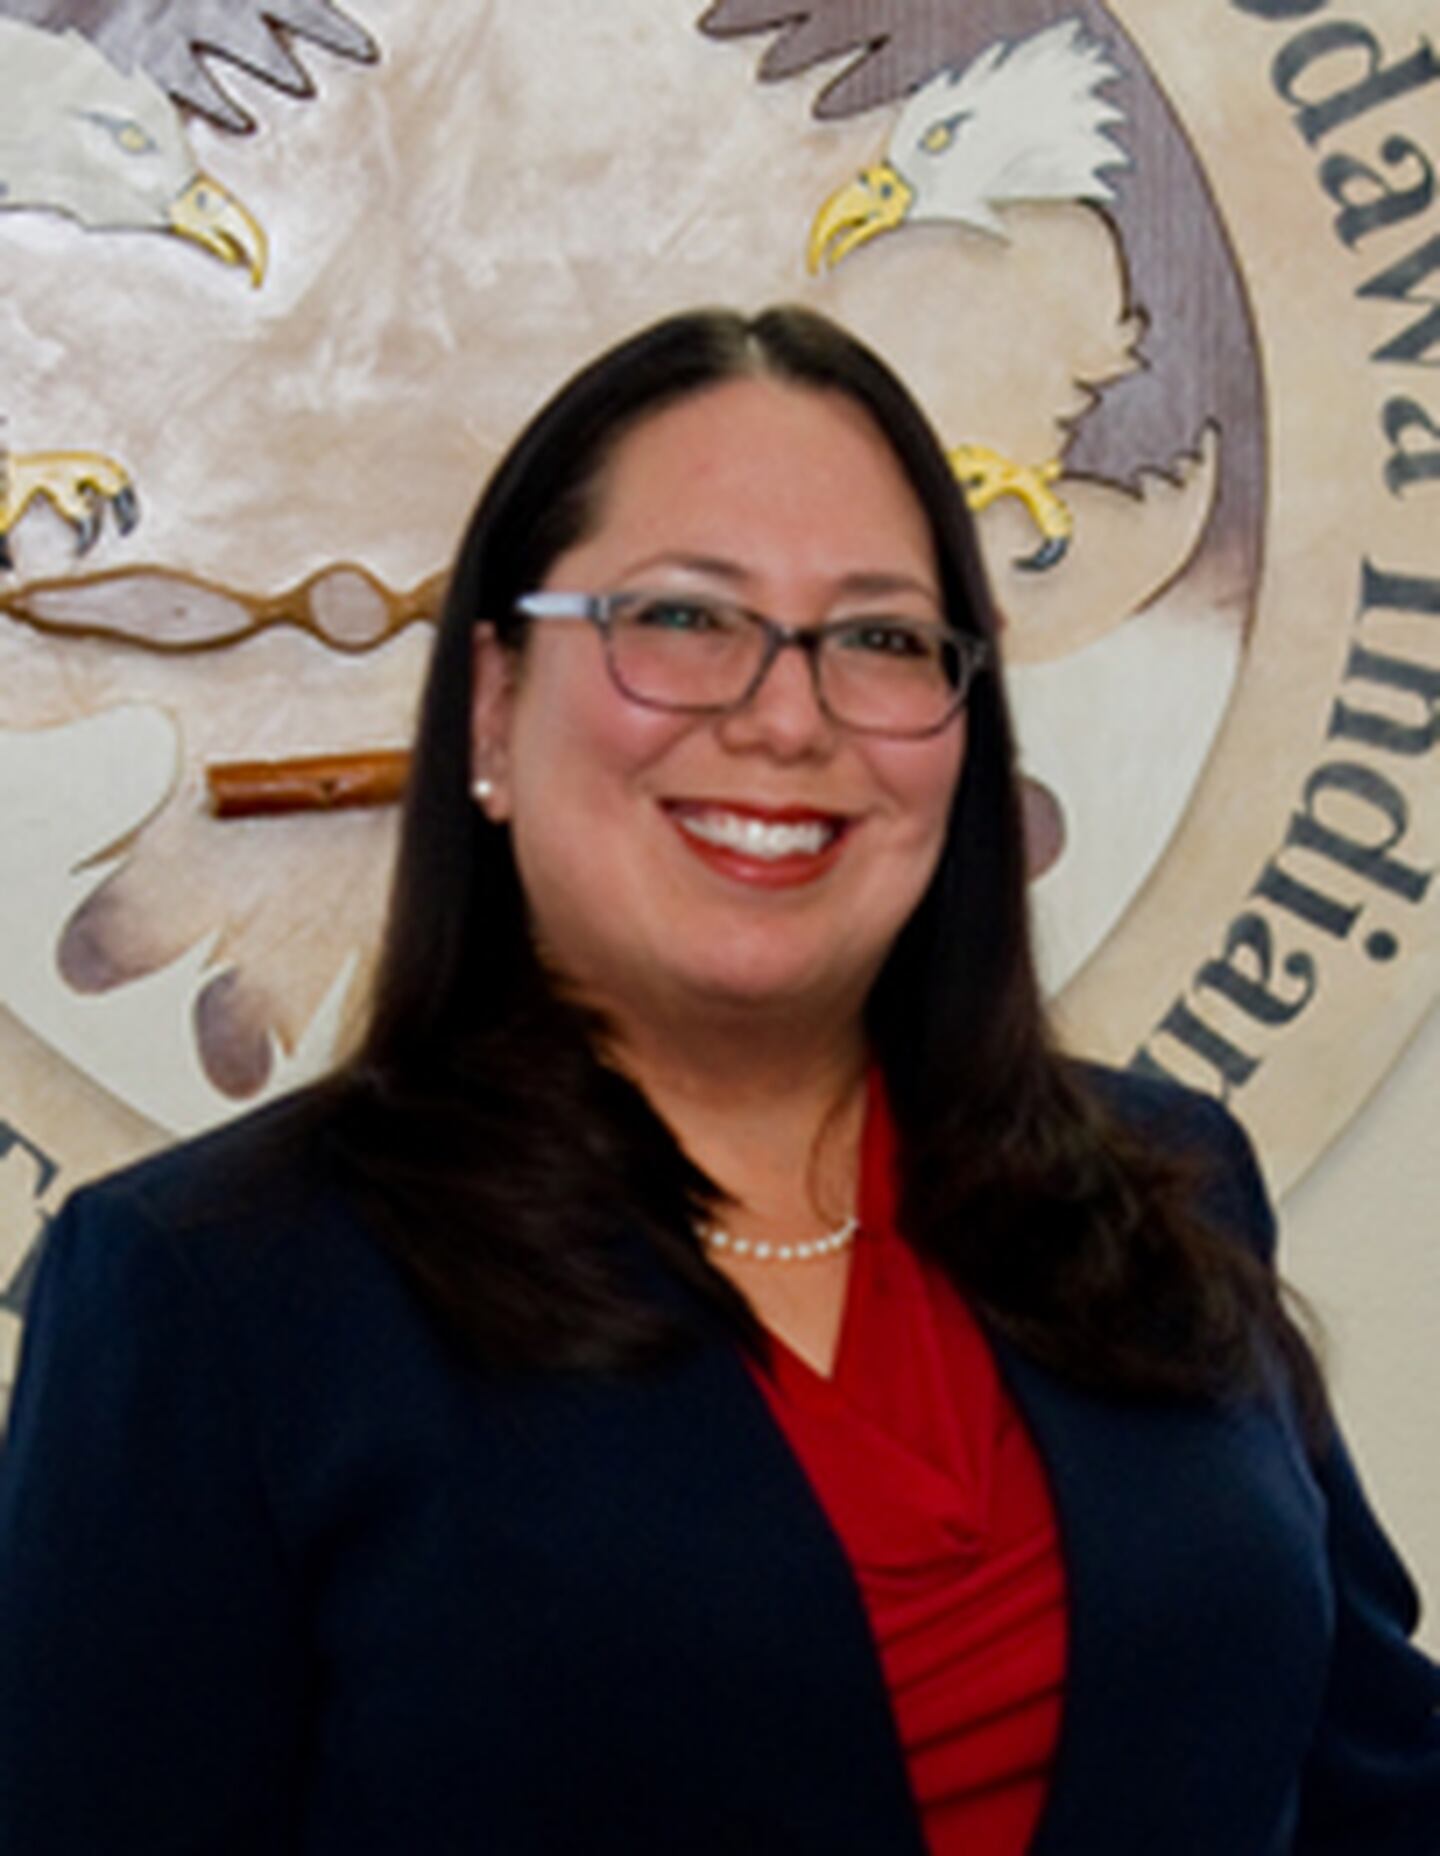 Judge Allie Greenleaf Maldonado